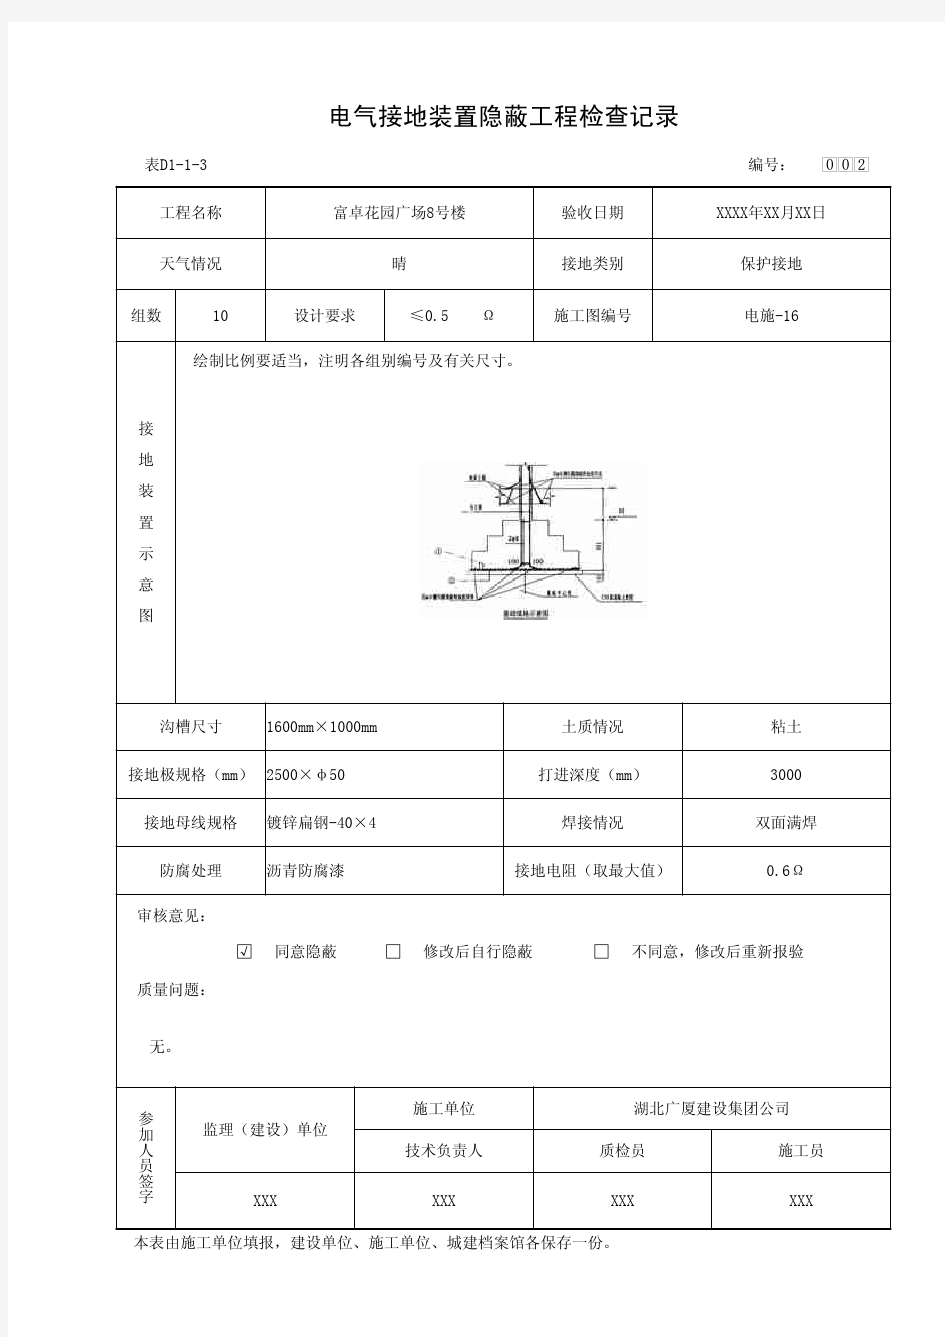 电气接地装置隐蔽工程检验记录(表D1-1-3)